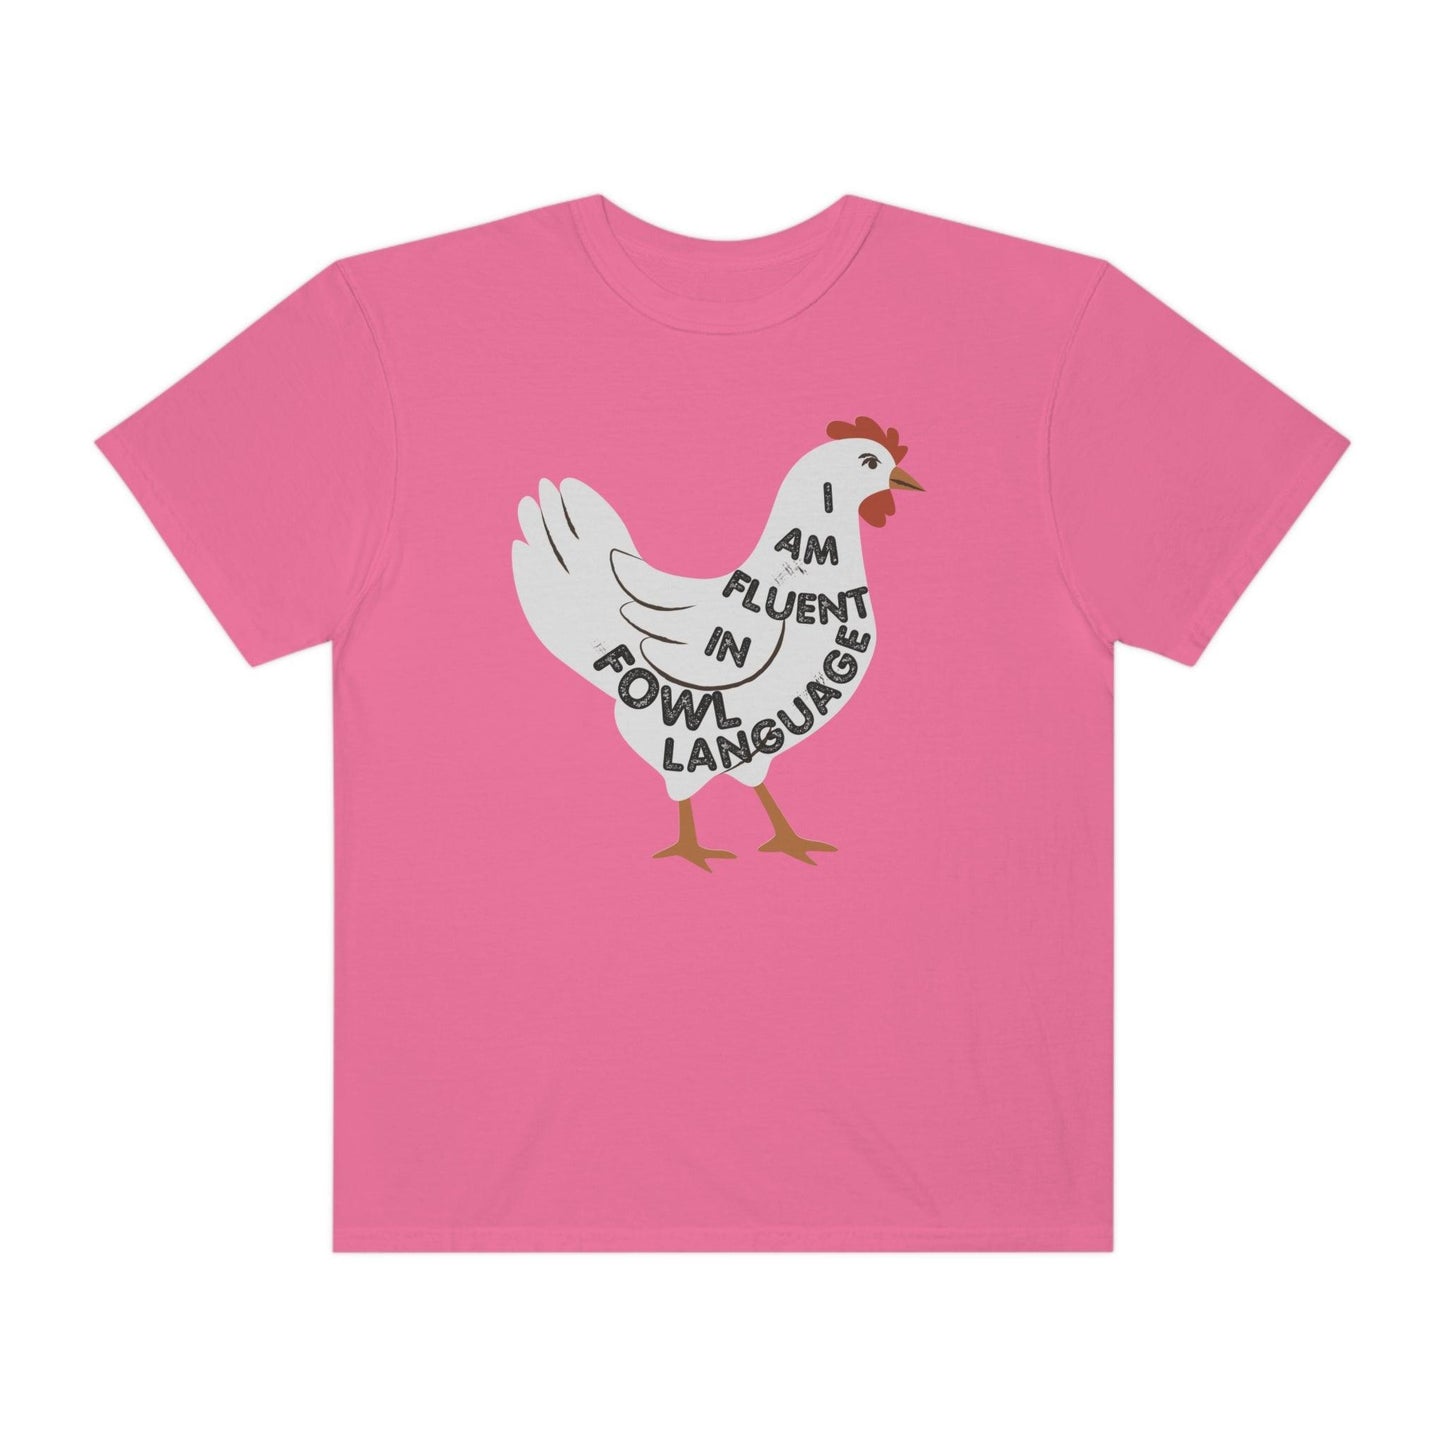 Chicken Shirt Chicken Tee Chicken Owner Gift - Gift For Chicken Lover gift, Fluent in Fowl Language shirt